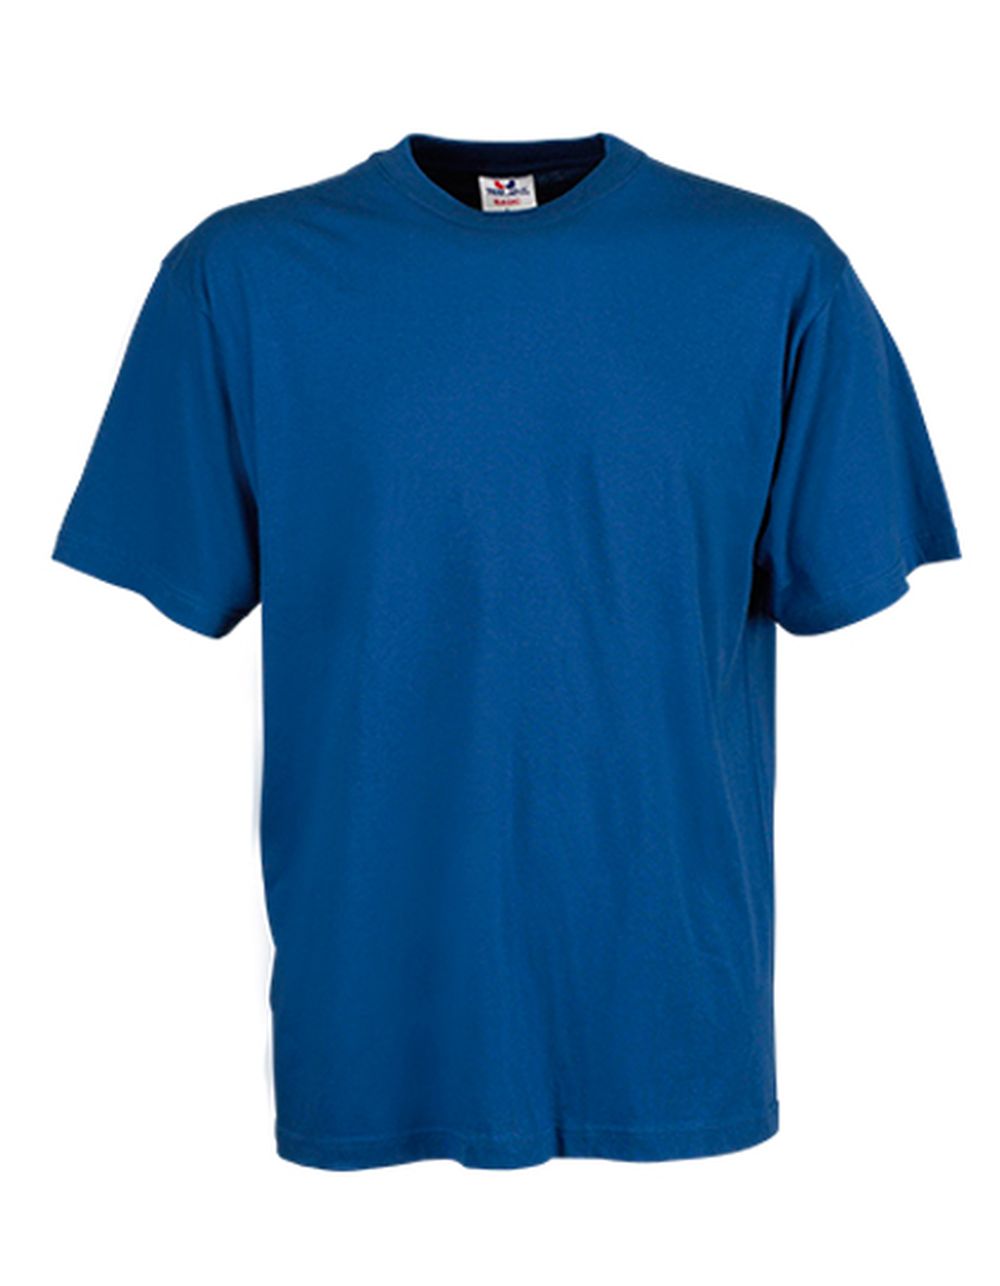 Blau 6Y Mayoral Bluse KINDER Hemden & T-Shirts Stickerei Rabatt 83 % 